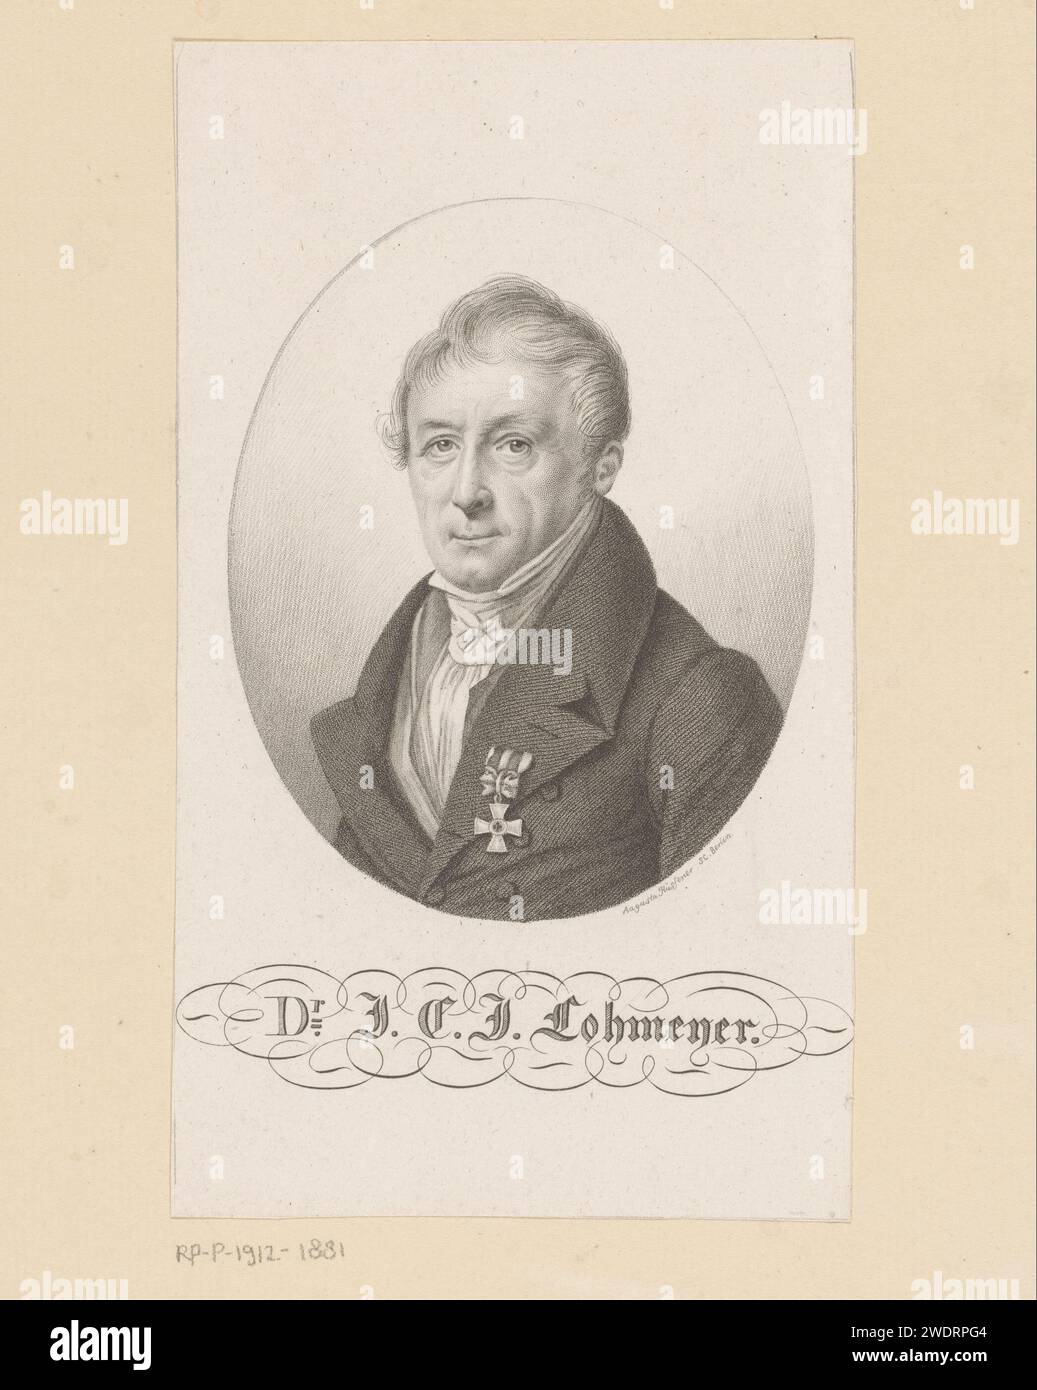 Porträt van Johann Karl Jacob Lohmeyer, Auguste Hüssener, 1799 - 1877 Druck Berliner Papier historische Personen. Arzt, Arzt (+ Porträt des Gelehrten, Wissenschaftlers) Stockfoto